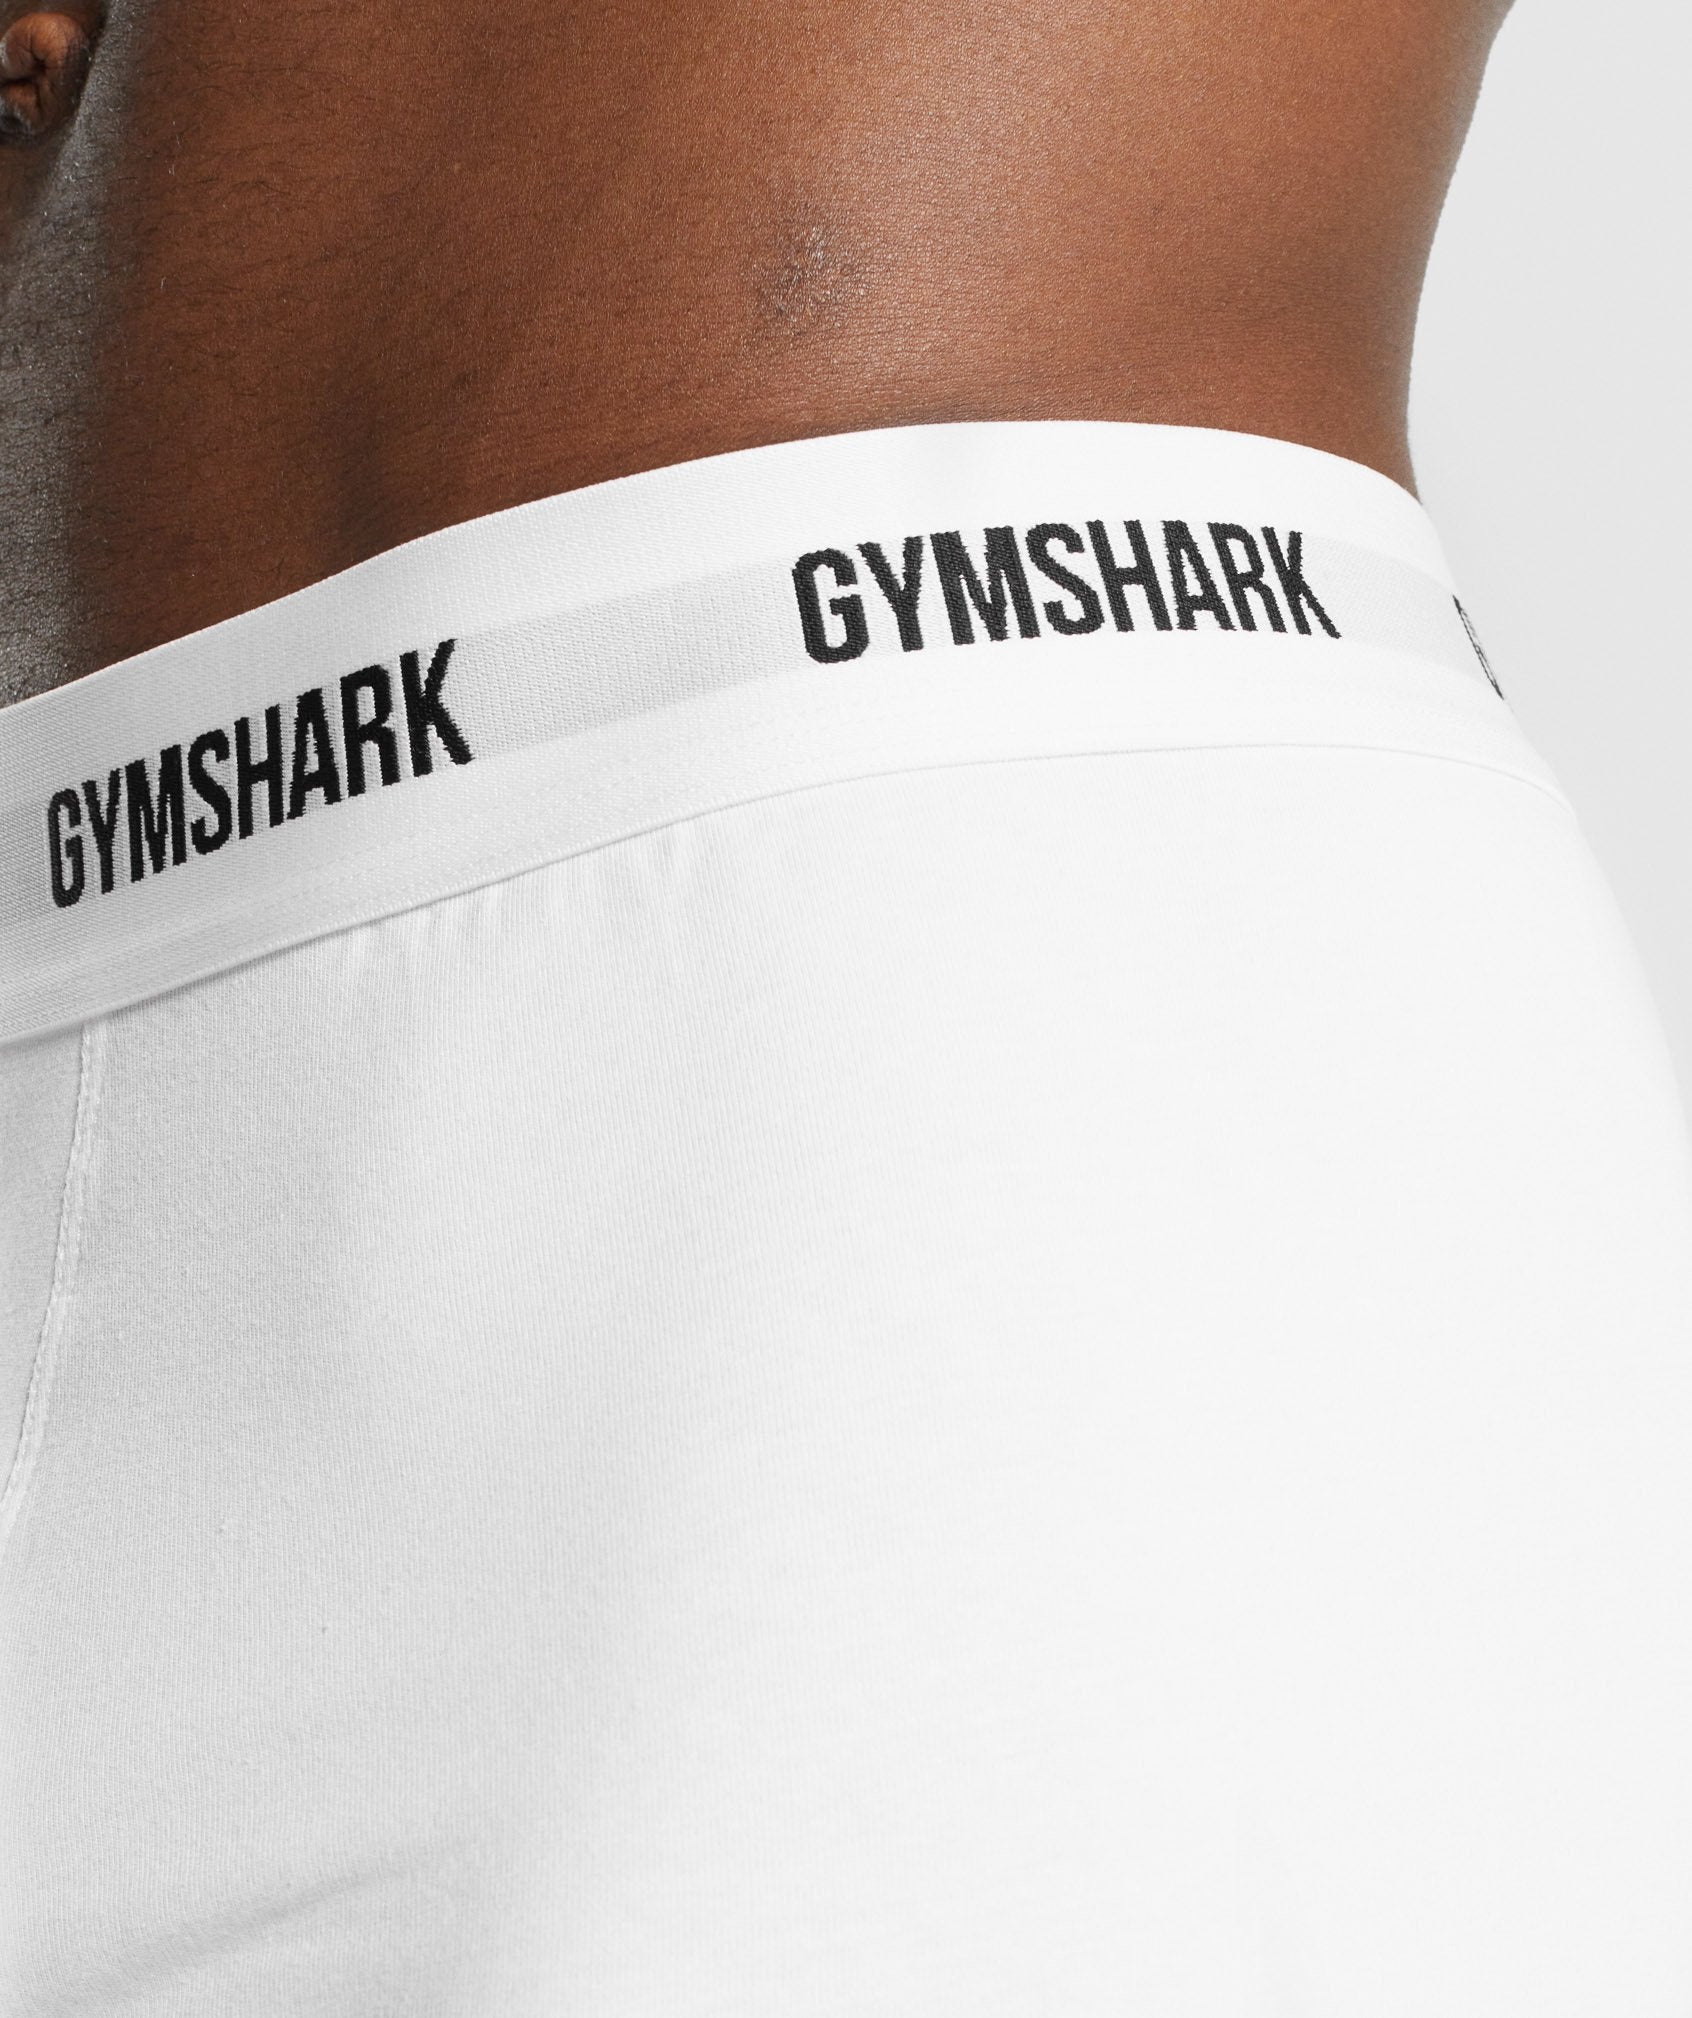 Gymshark Sports Tech Boxers 2Pk - Black